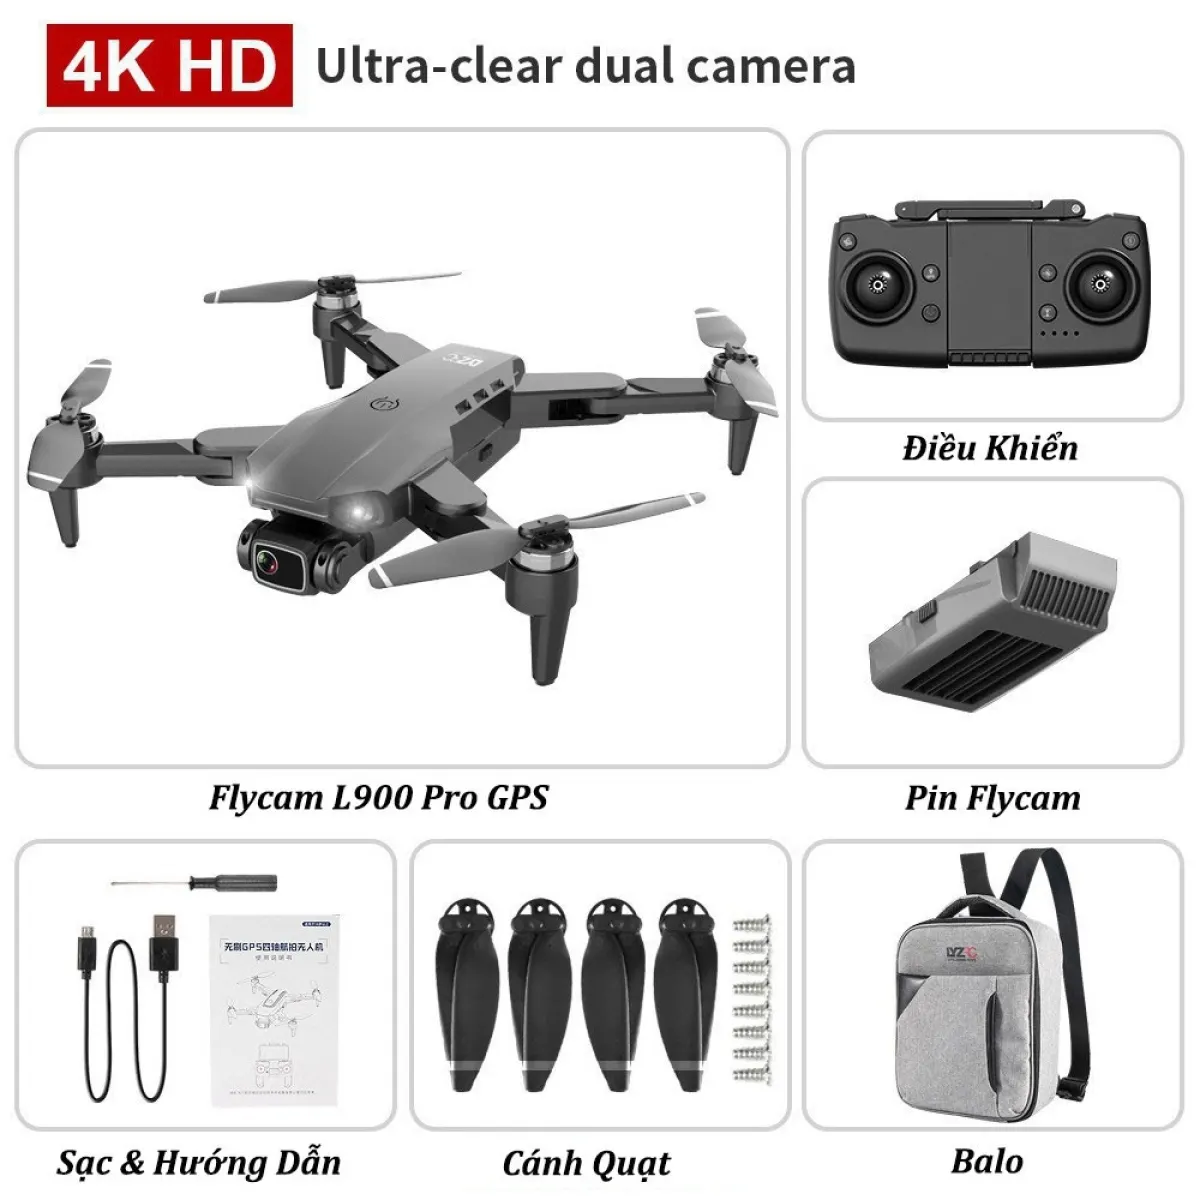 №❍♙ Flycam Mini Drone Camera 4k⚡️𝐅𝐑𝐄𝐄 𝐒𝐇𝐈𝐏⚡️ Máy bay Flycam L900  Pro Gimbal 2 Trục Camera 4KĐộng Cơ Không Chổi Than